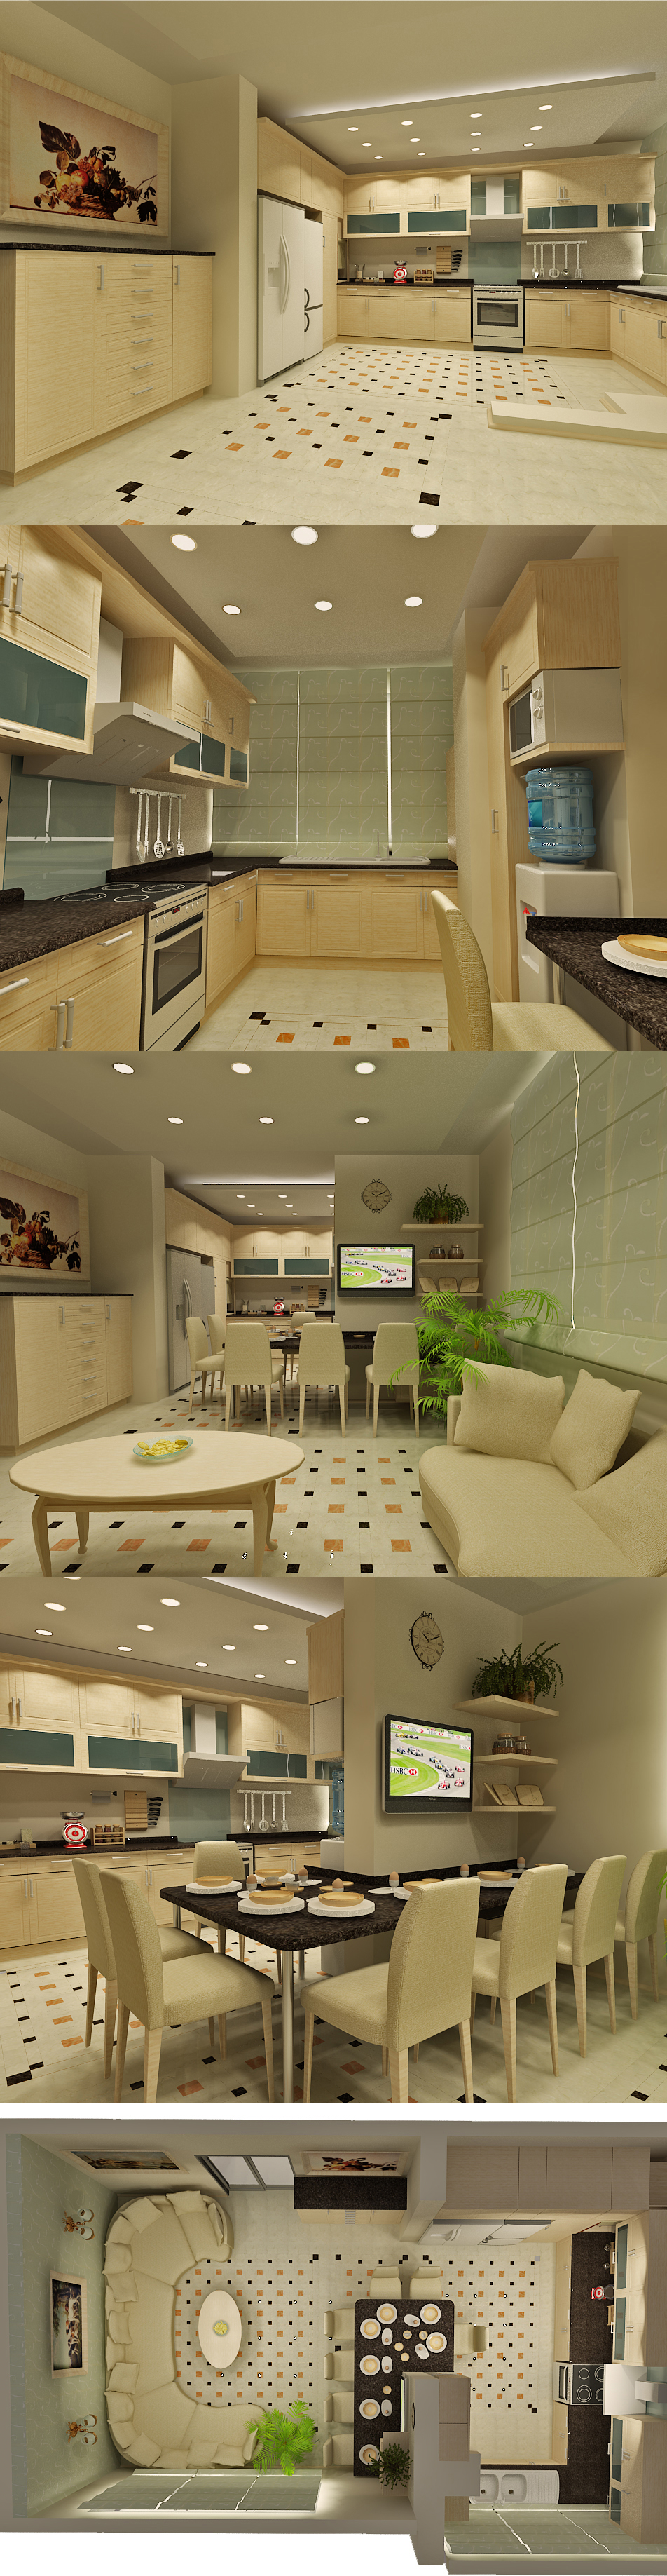 http://rozup.ir/up/tarrahi-khaneh/Pictures/Teen-Room-Designs/Kitchen-Design-Ideas-Set-2/34.jpg